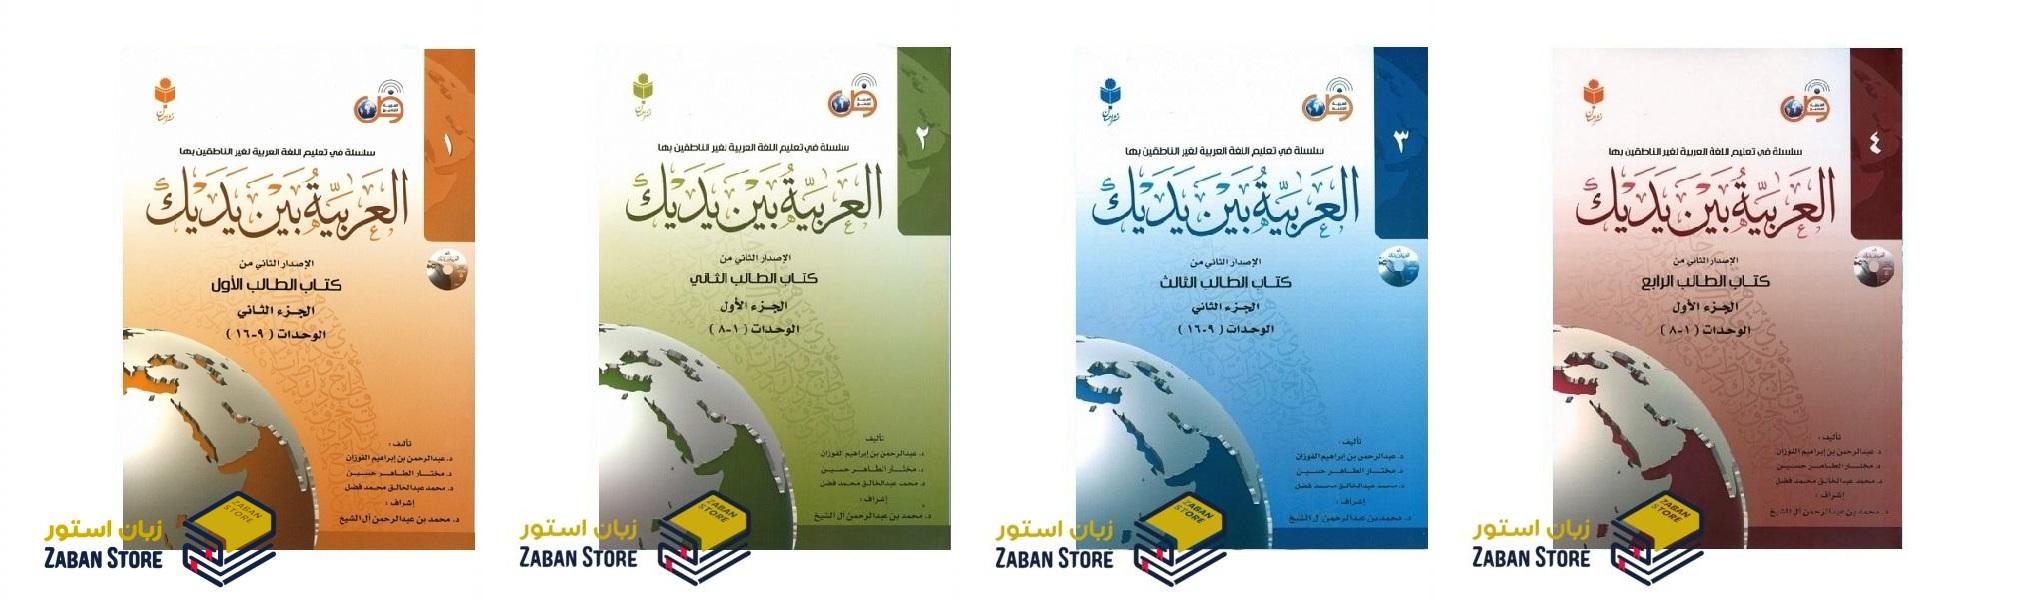 خرید کتاب زبان عربی | فروشگاه اینترنتی کتاب زبان عربی | العربیه بین یدیک | مجموعه کتاب های آموزش زبان عربی العربیه بین یدیک